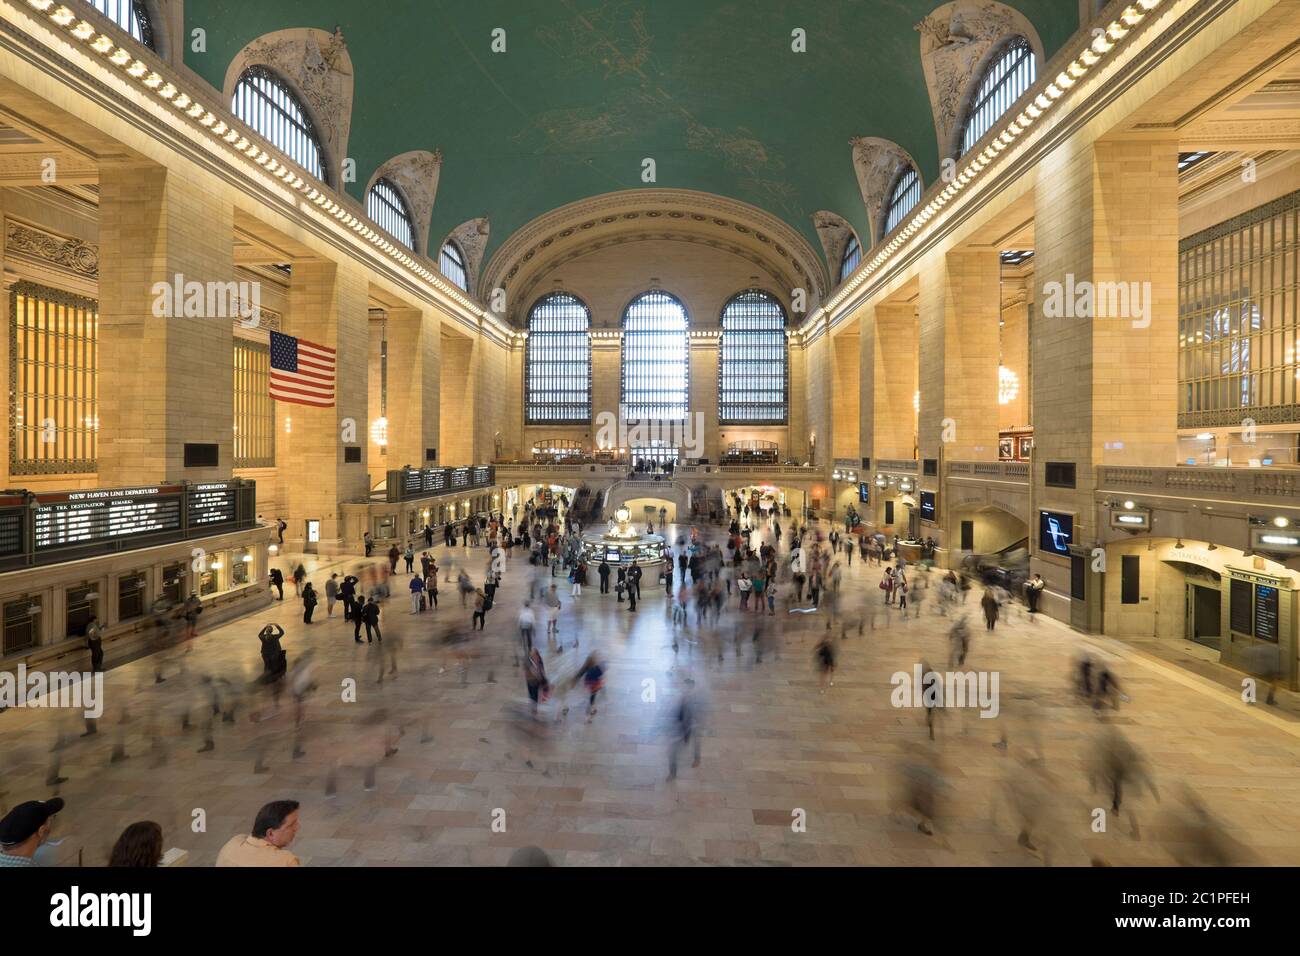 Persone nella lobby principale del Grand Central Terminal, la stazione ferroviaria più grande del mondo per numero di piattaforme, New York City, USA Foto Stock